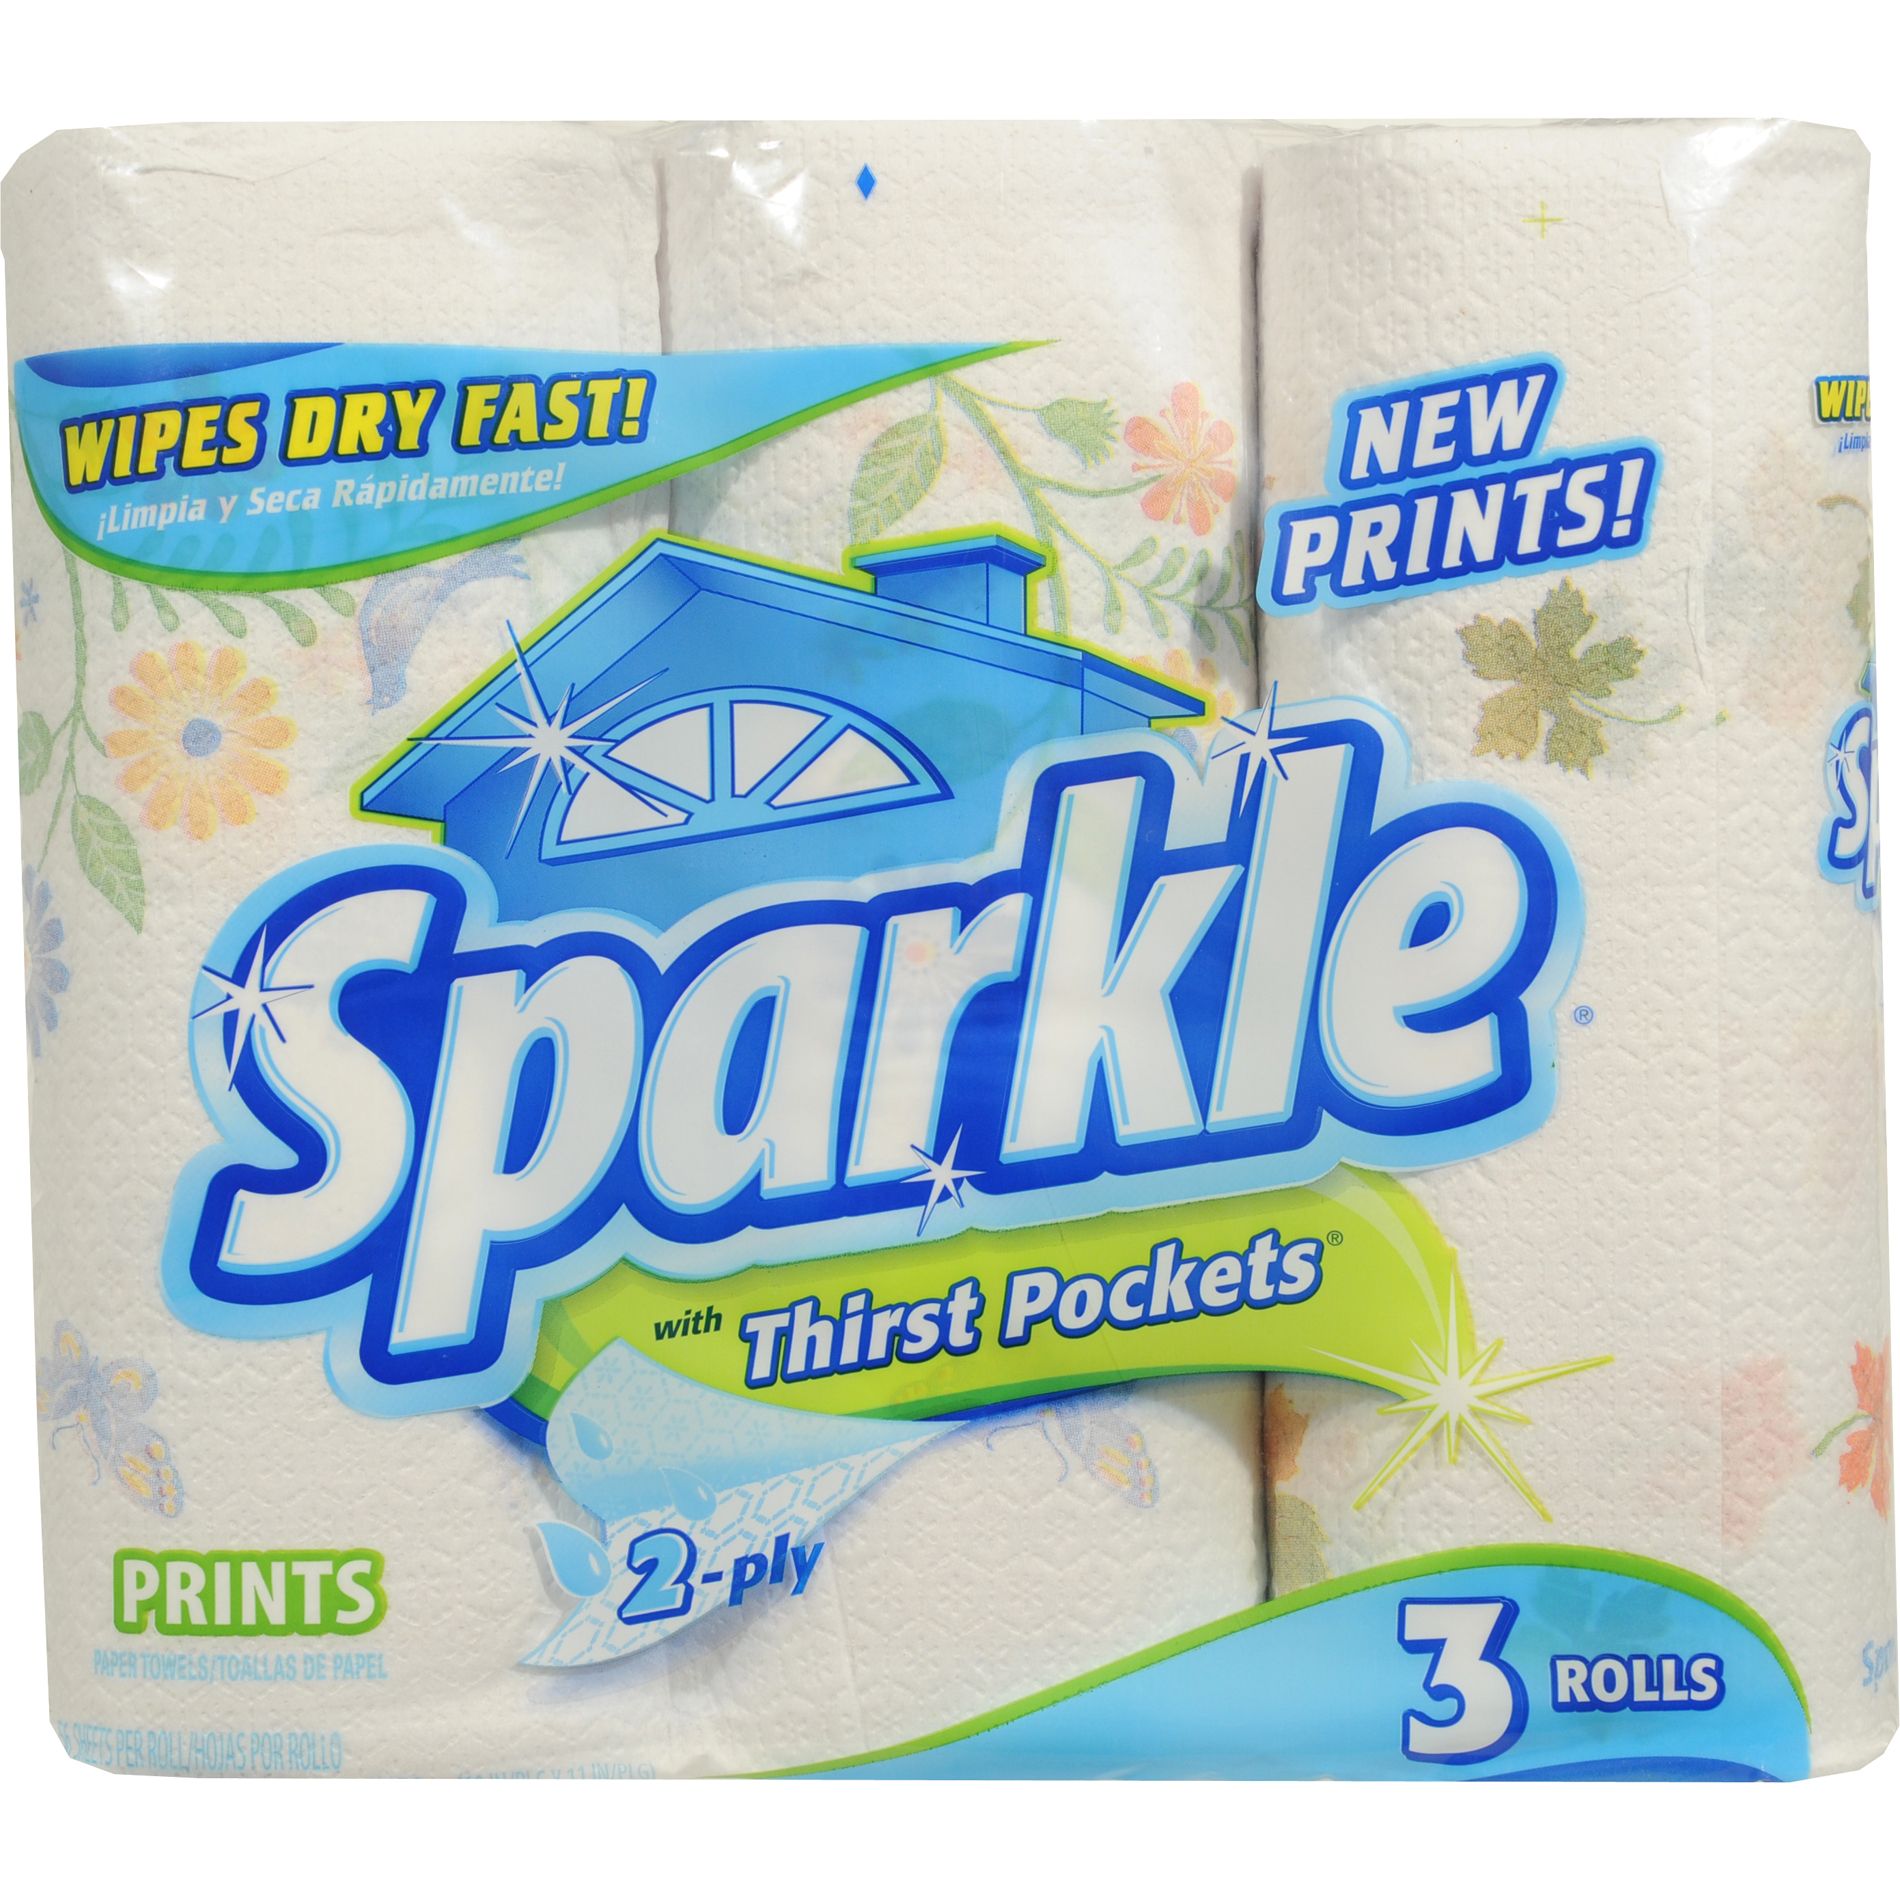 Sparkle Paper Towels Prints, 2-Ply, 3 Rolls